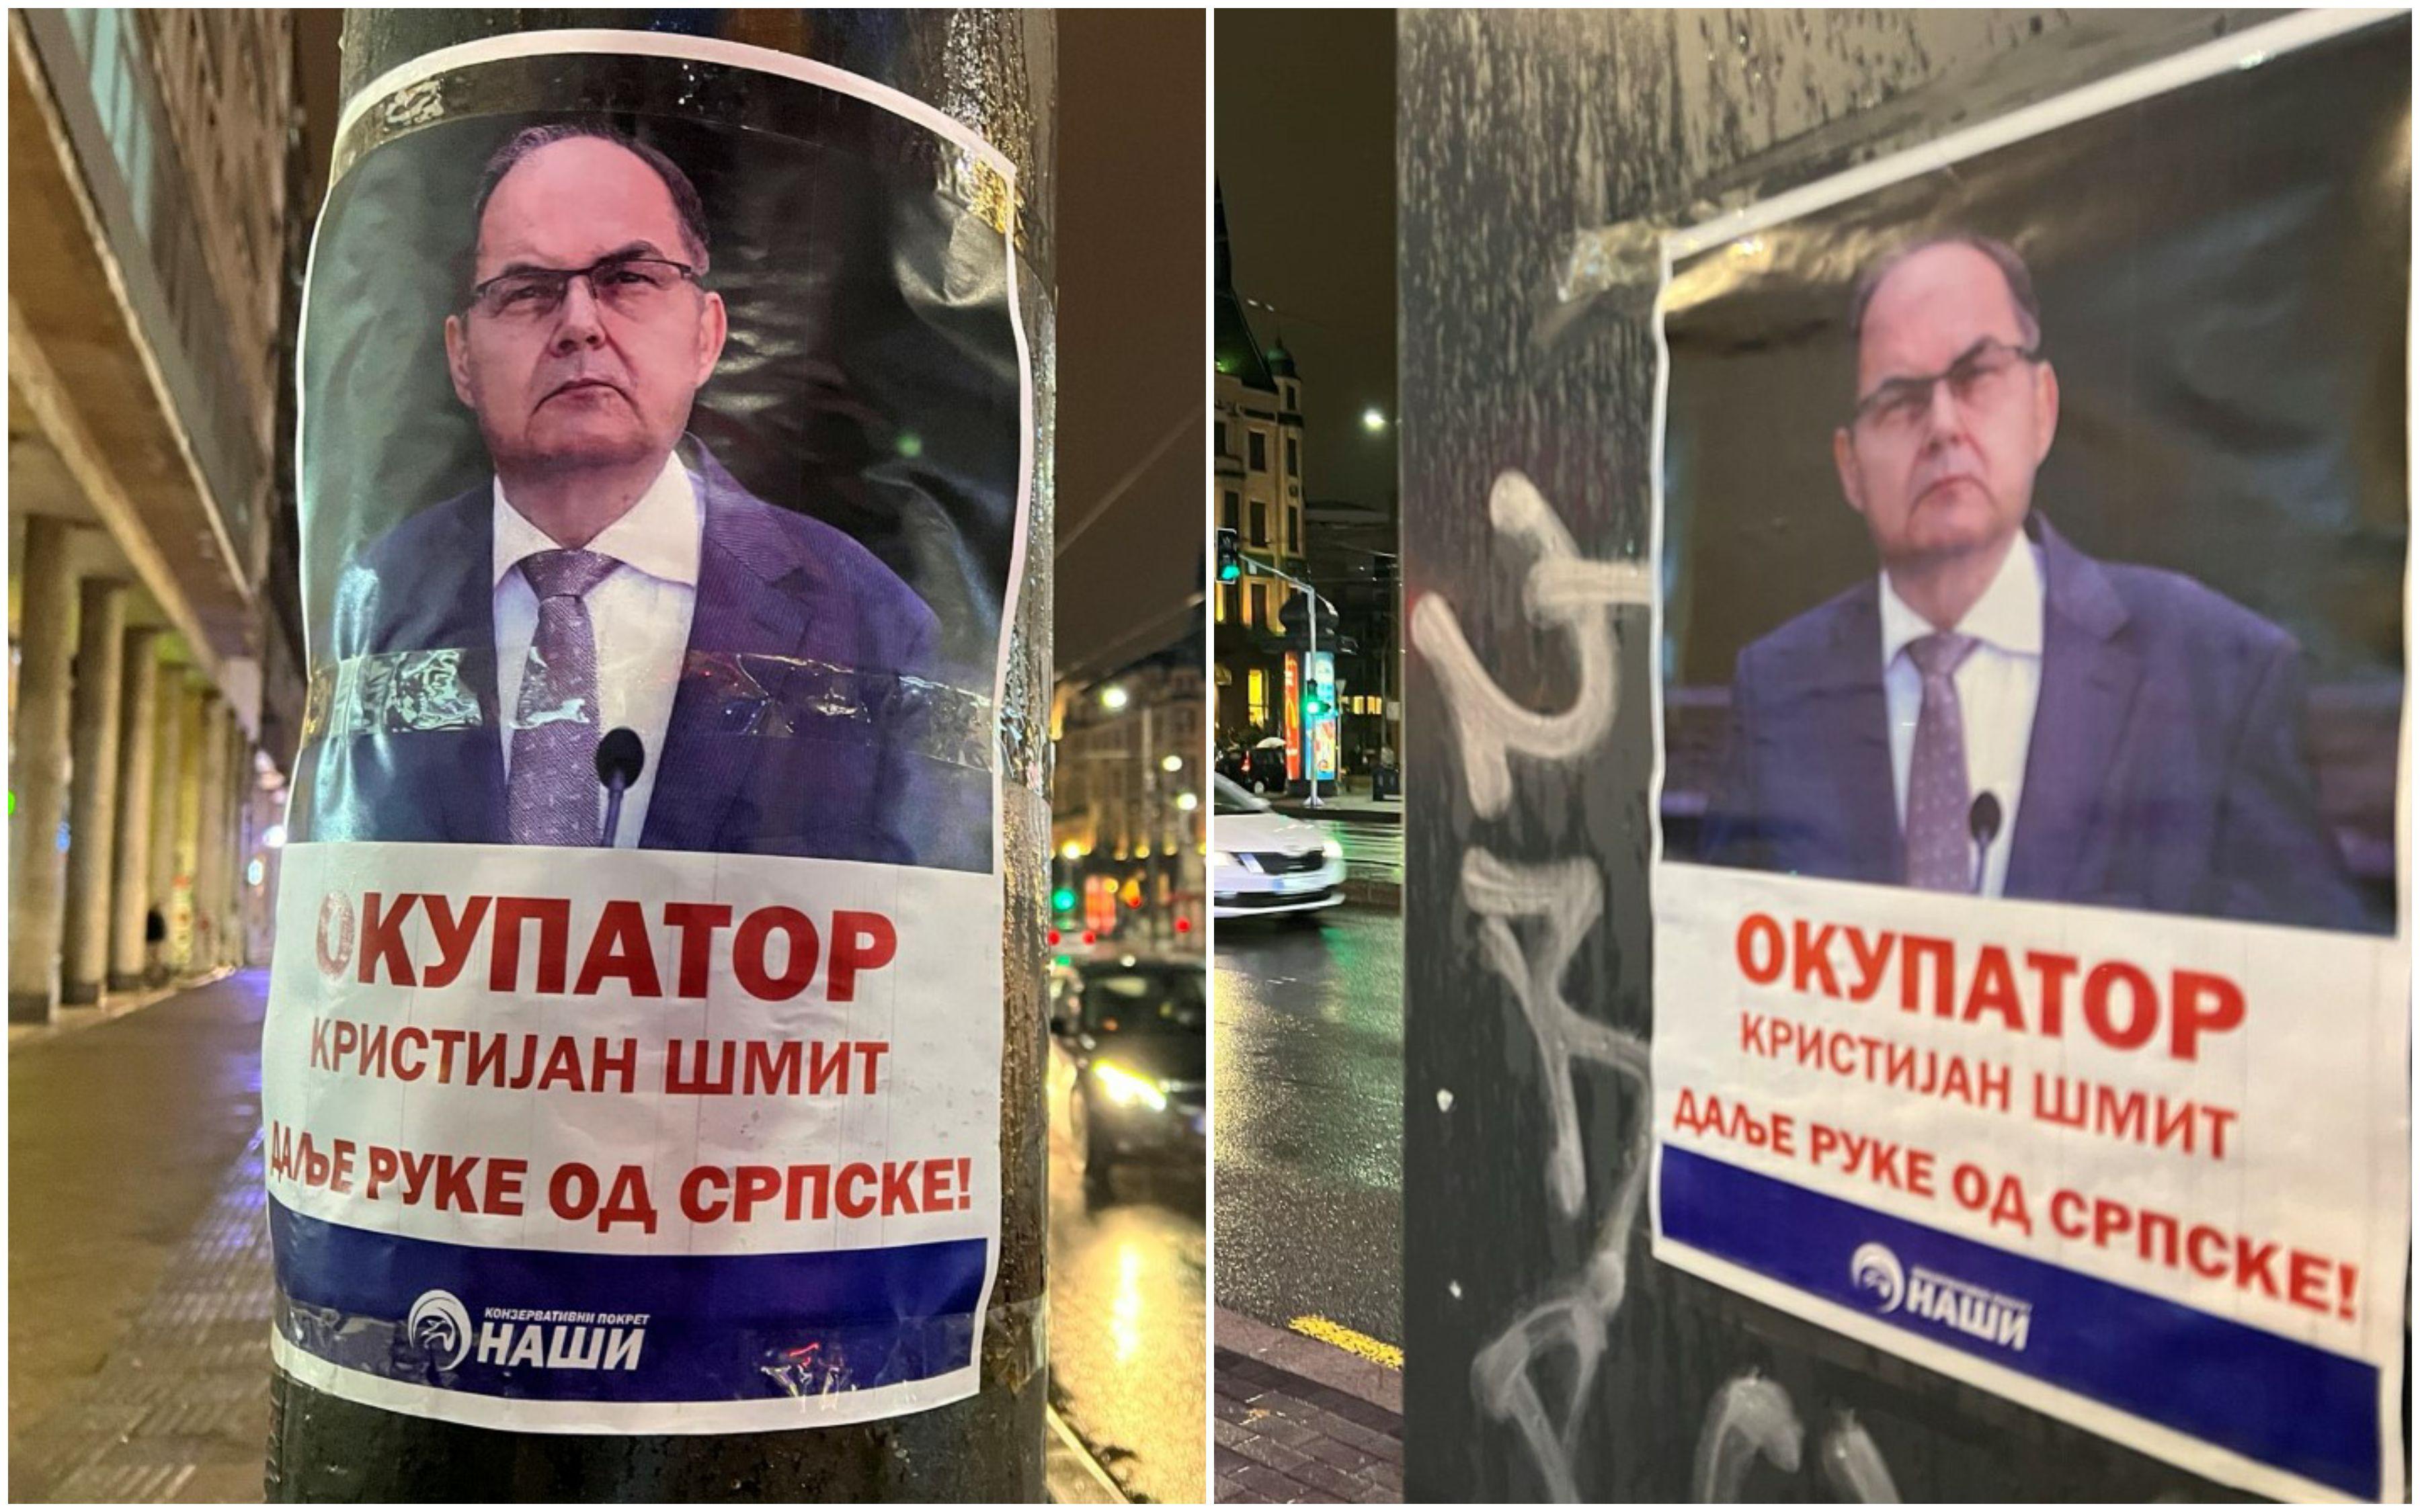 Plakati na kojima Kristijana Šmita nazivaju "okupatorom" - Avaz